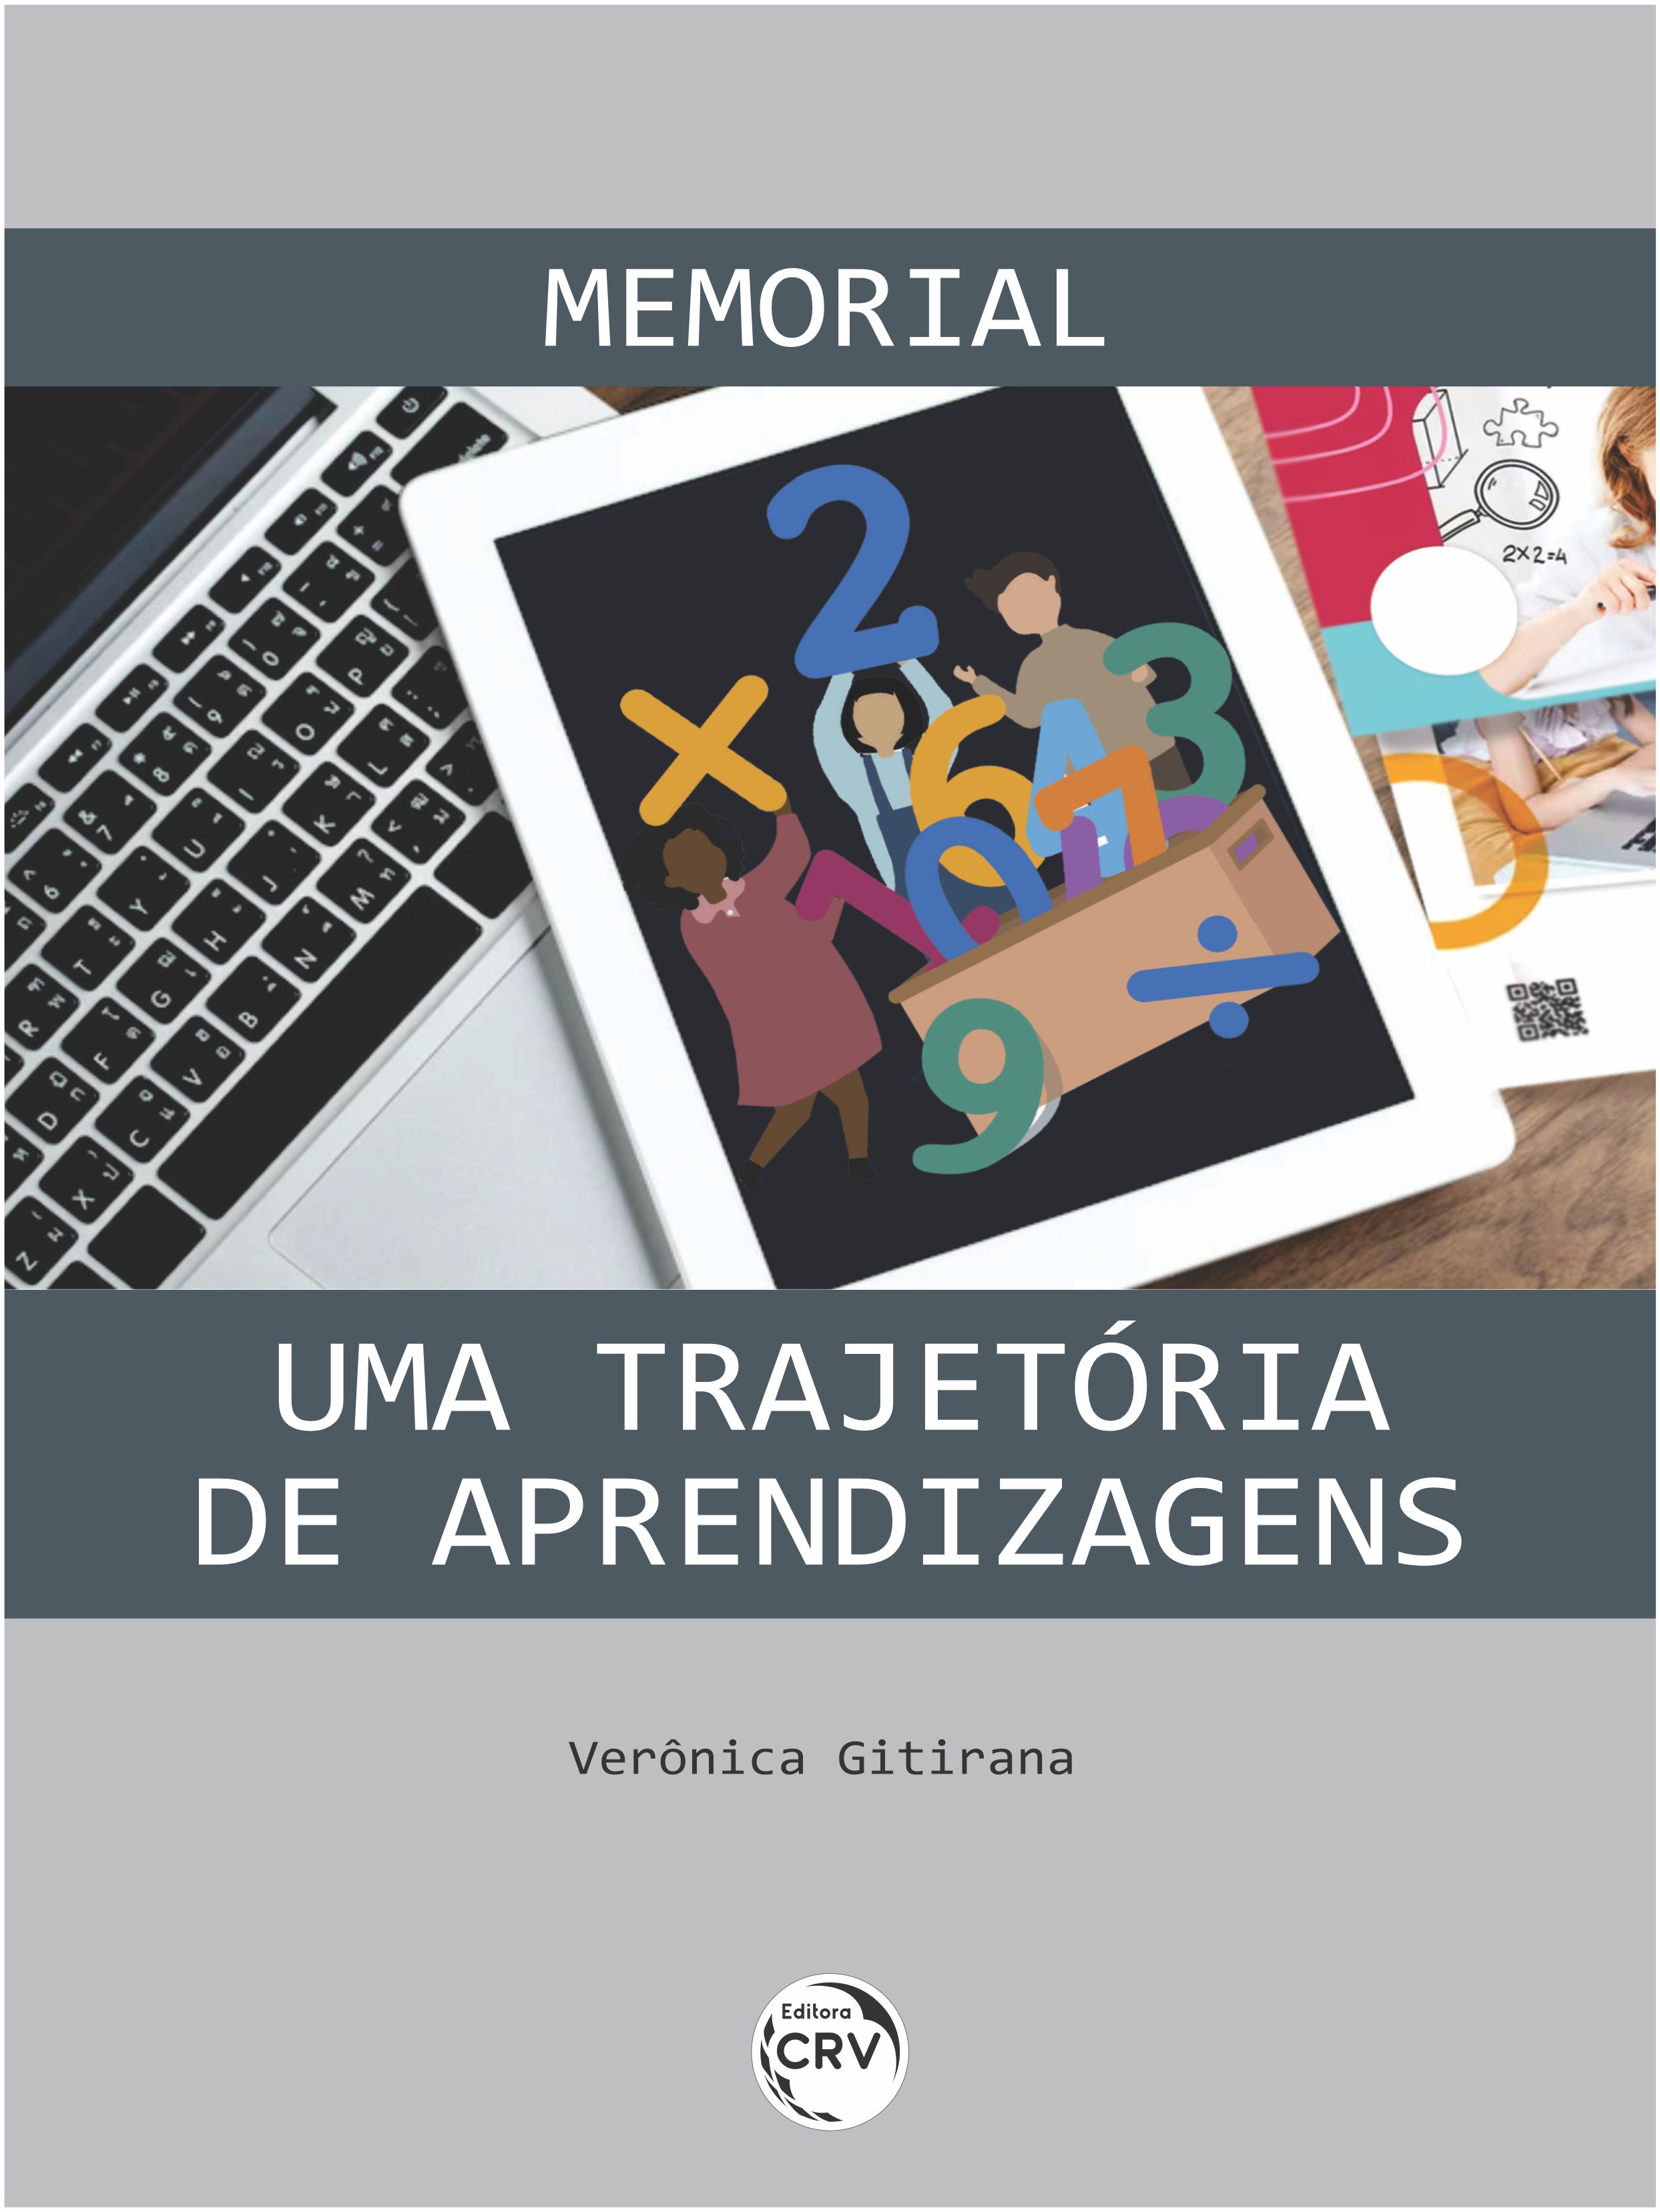 Capa do livro: MEMORIAL<br>UMA TRAJETÓRIA DE APRENDIZAGENS